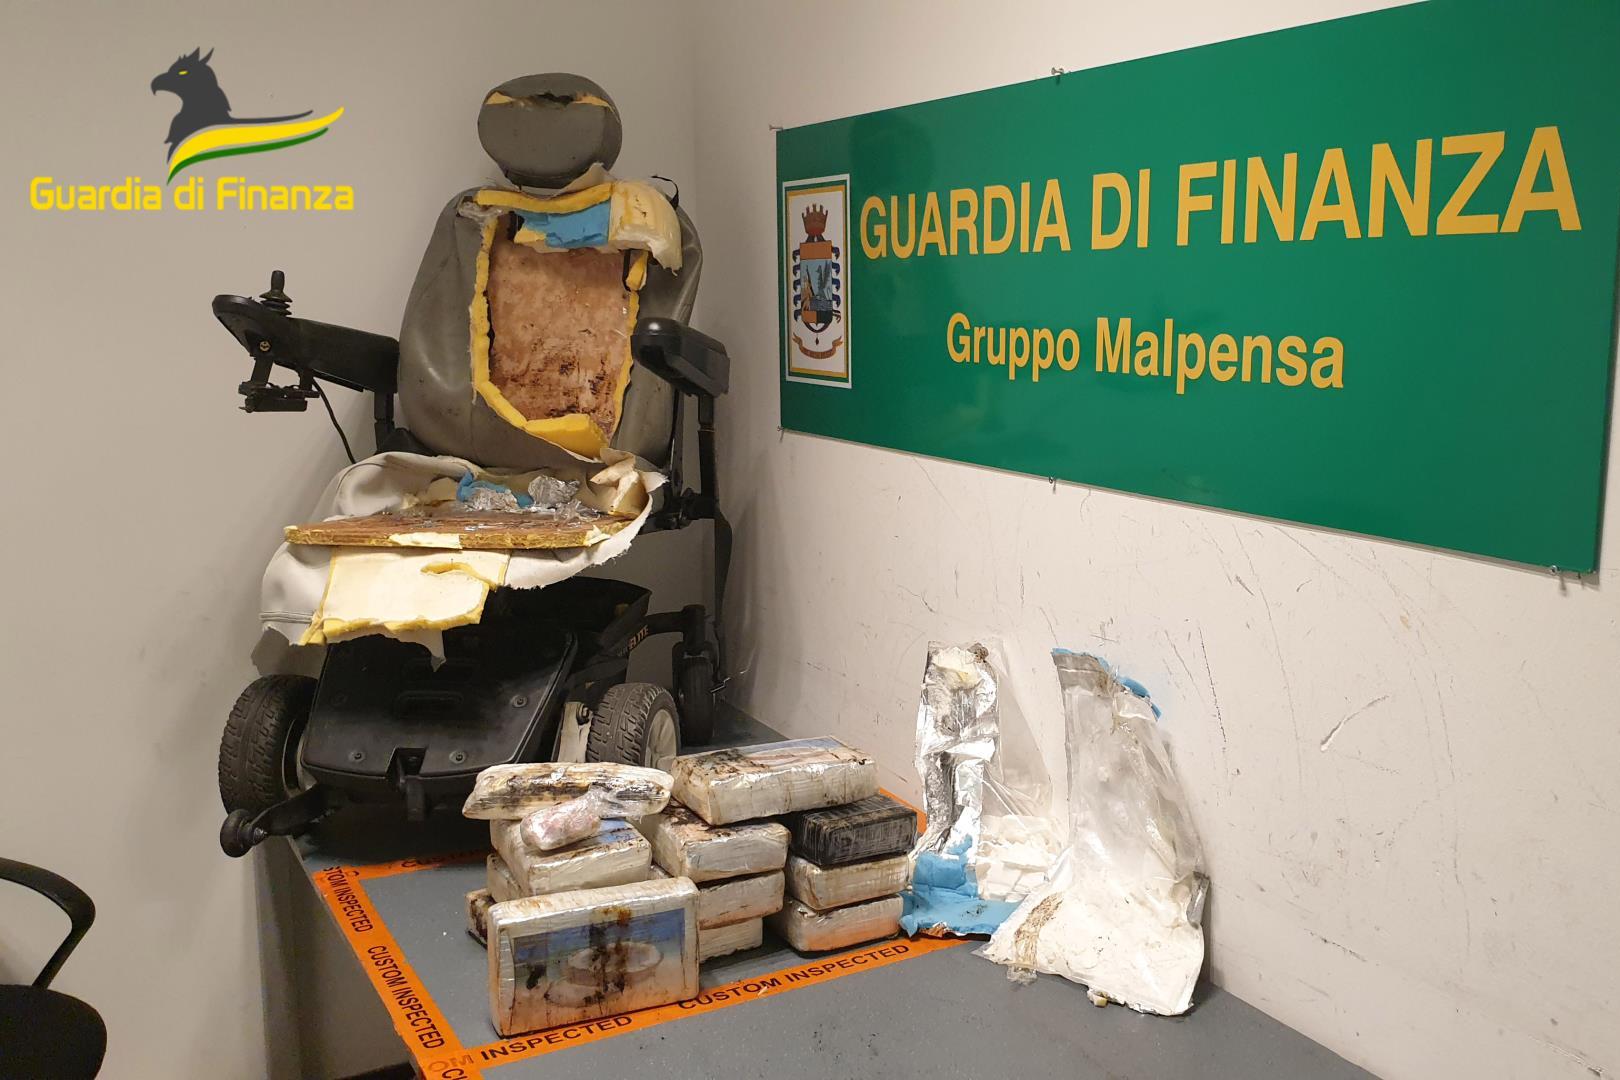 La sedia a rotelle e la droga sequestrata a Malpensa (foto Guardia di finanza)